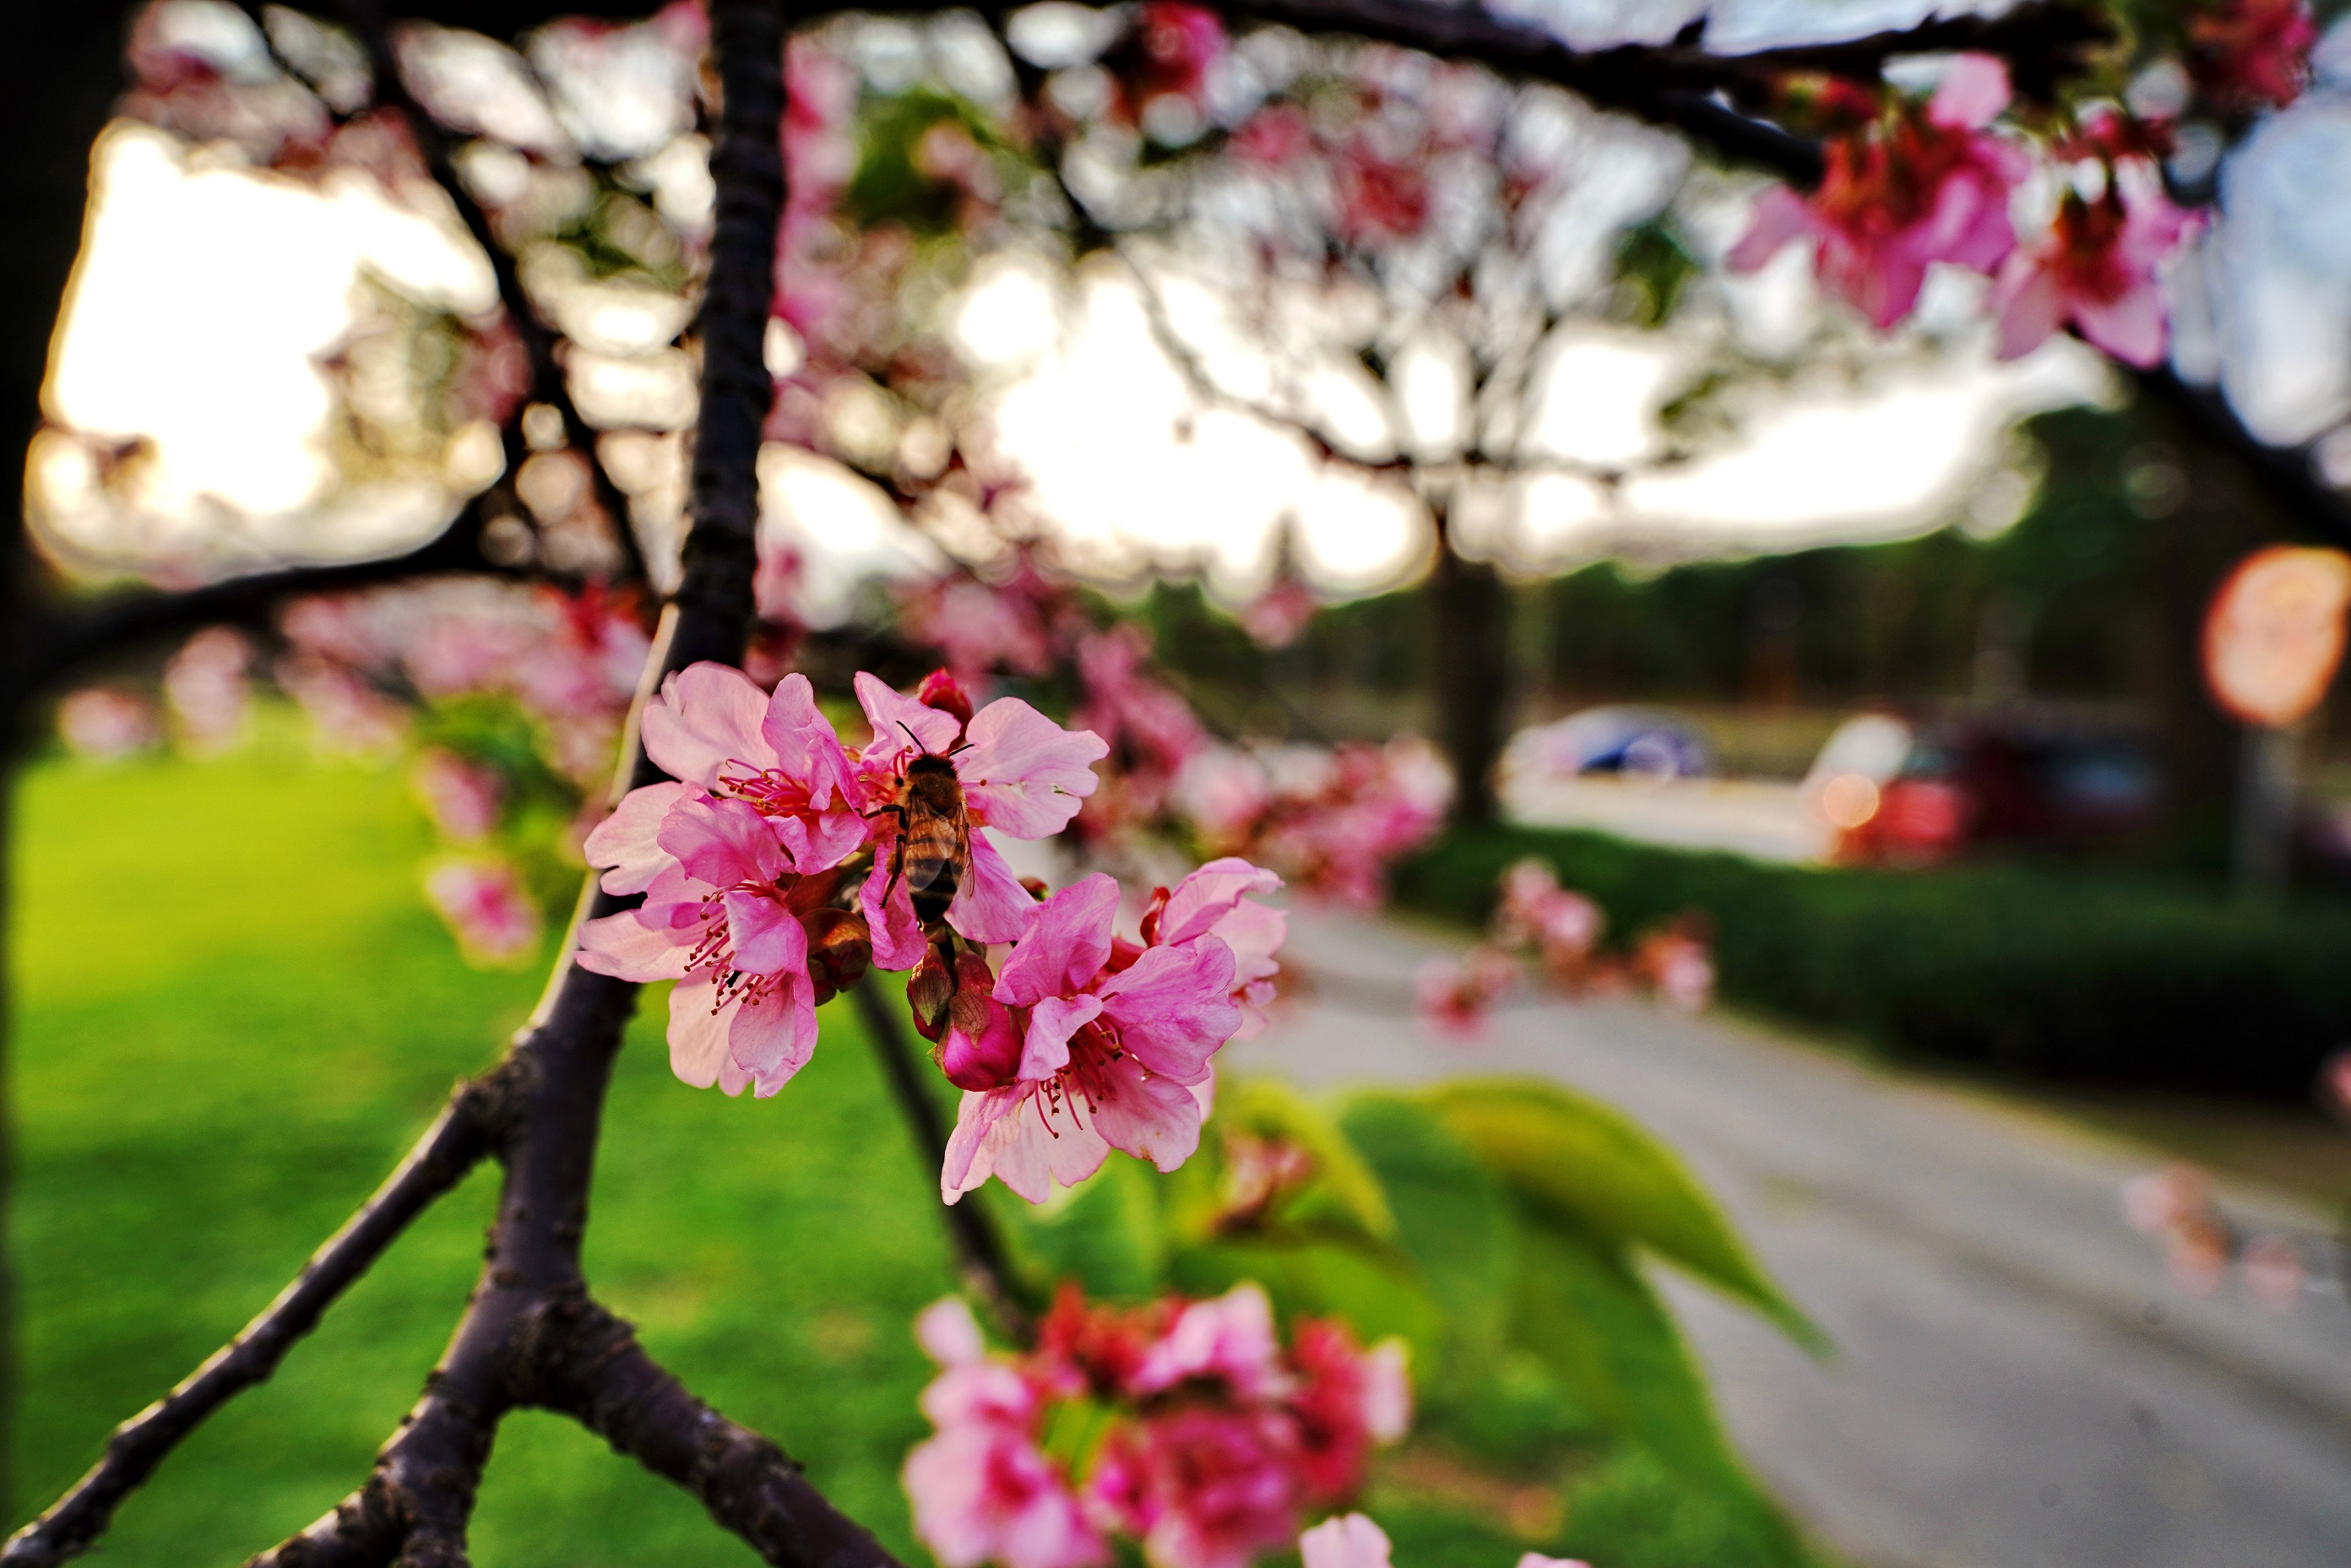 趁著粉櫻盛放之時，和親朋好友一起來趟河濱單車之旅，一同欣賞浪漫粉嫩河津櫻花的綻放美景